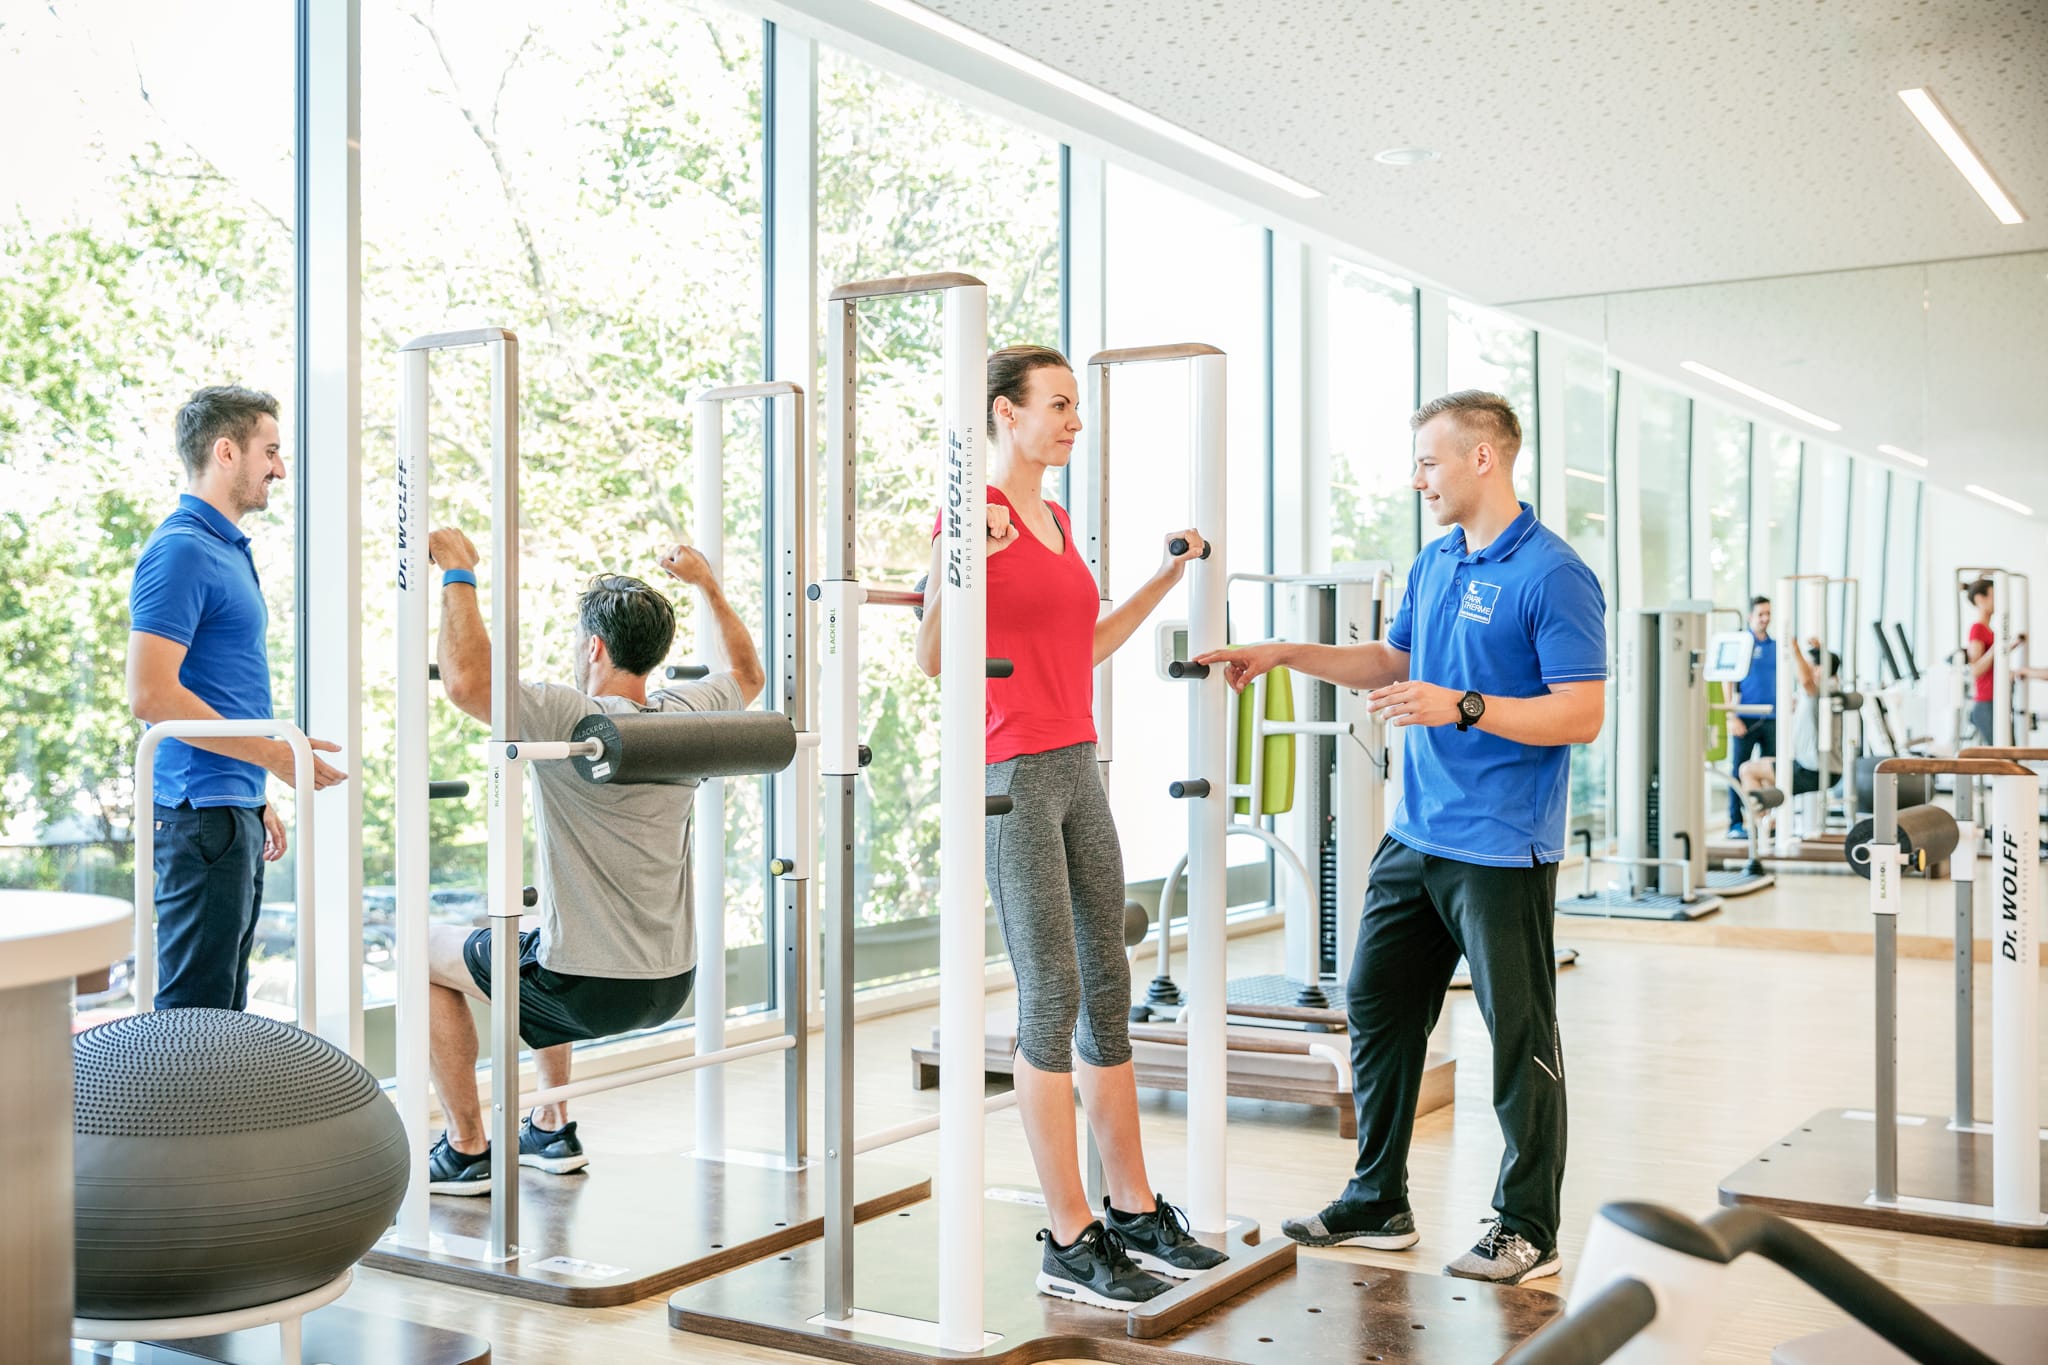 Zwei Physiotherapeuten erklären einem trainierenden Pärchen die Trainingsgeräte im Medizinischen Trainingszentrum.